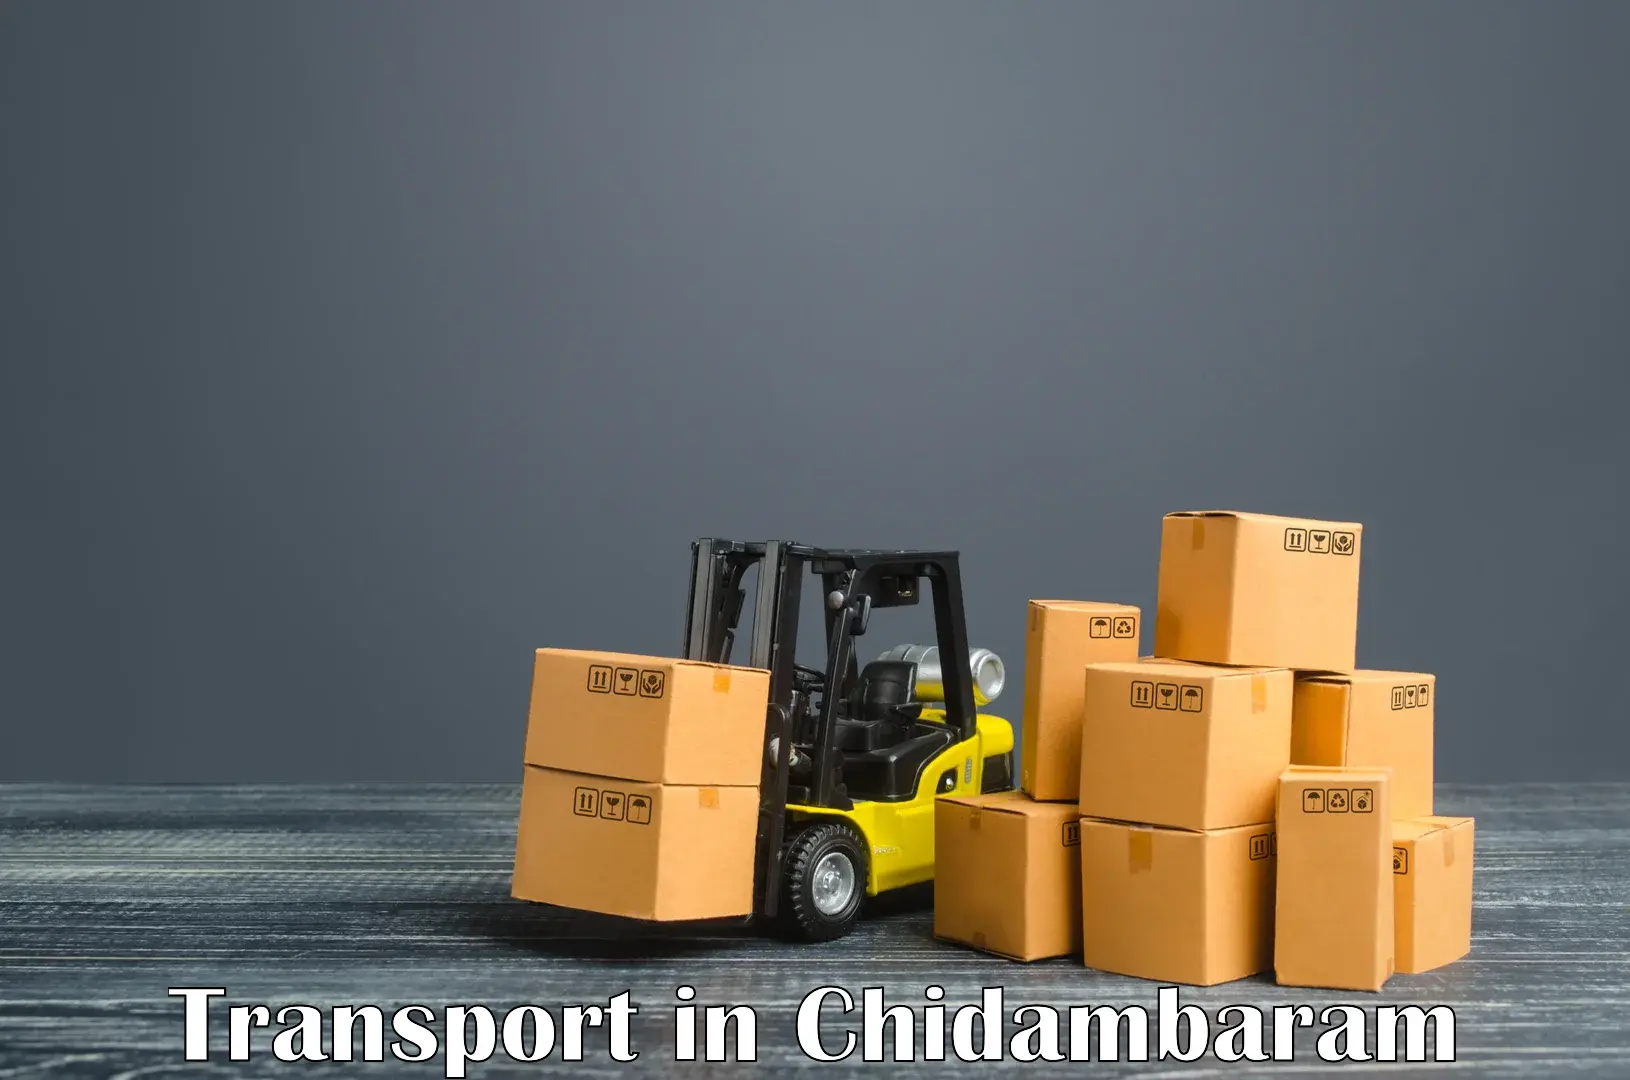 Furniture transport service in Chidambaram